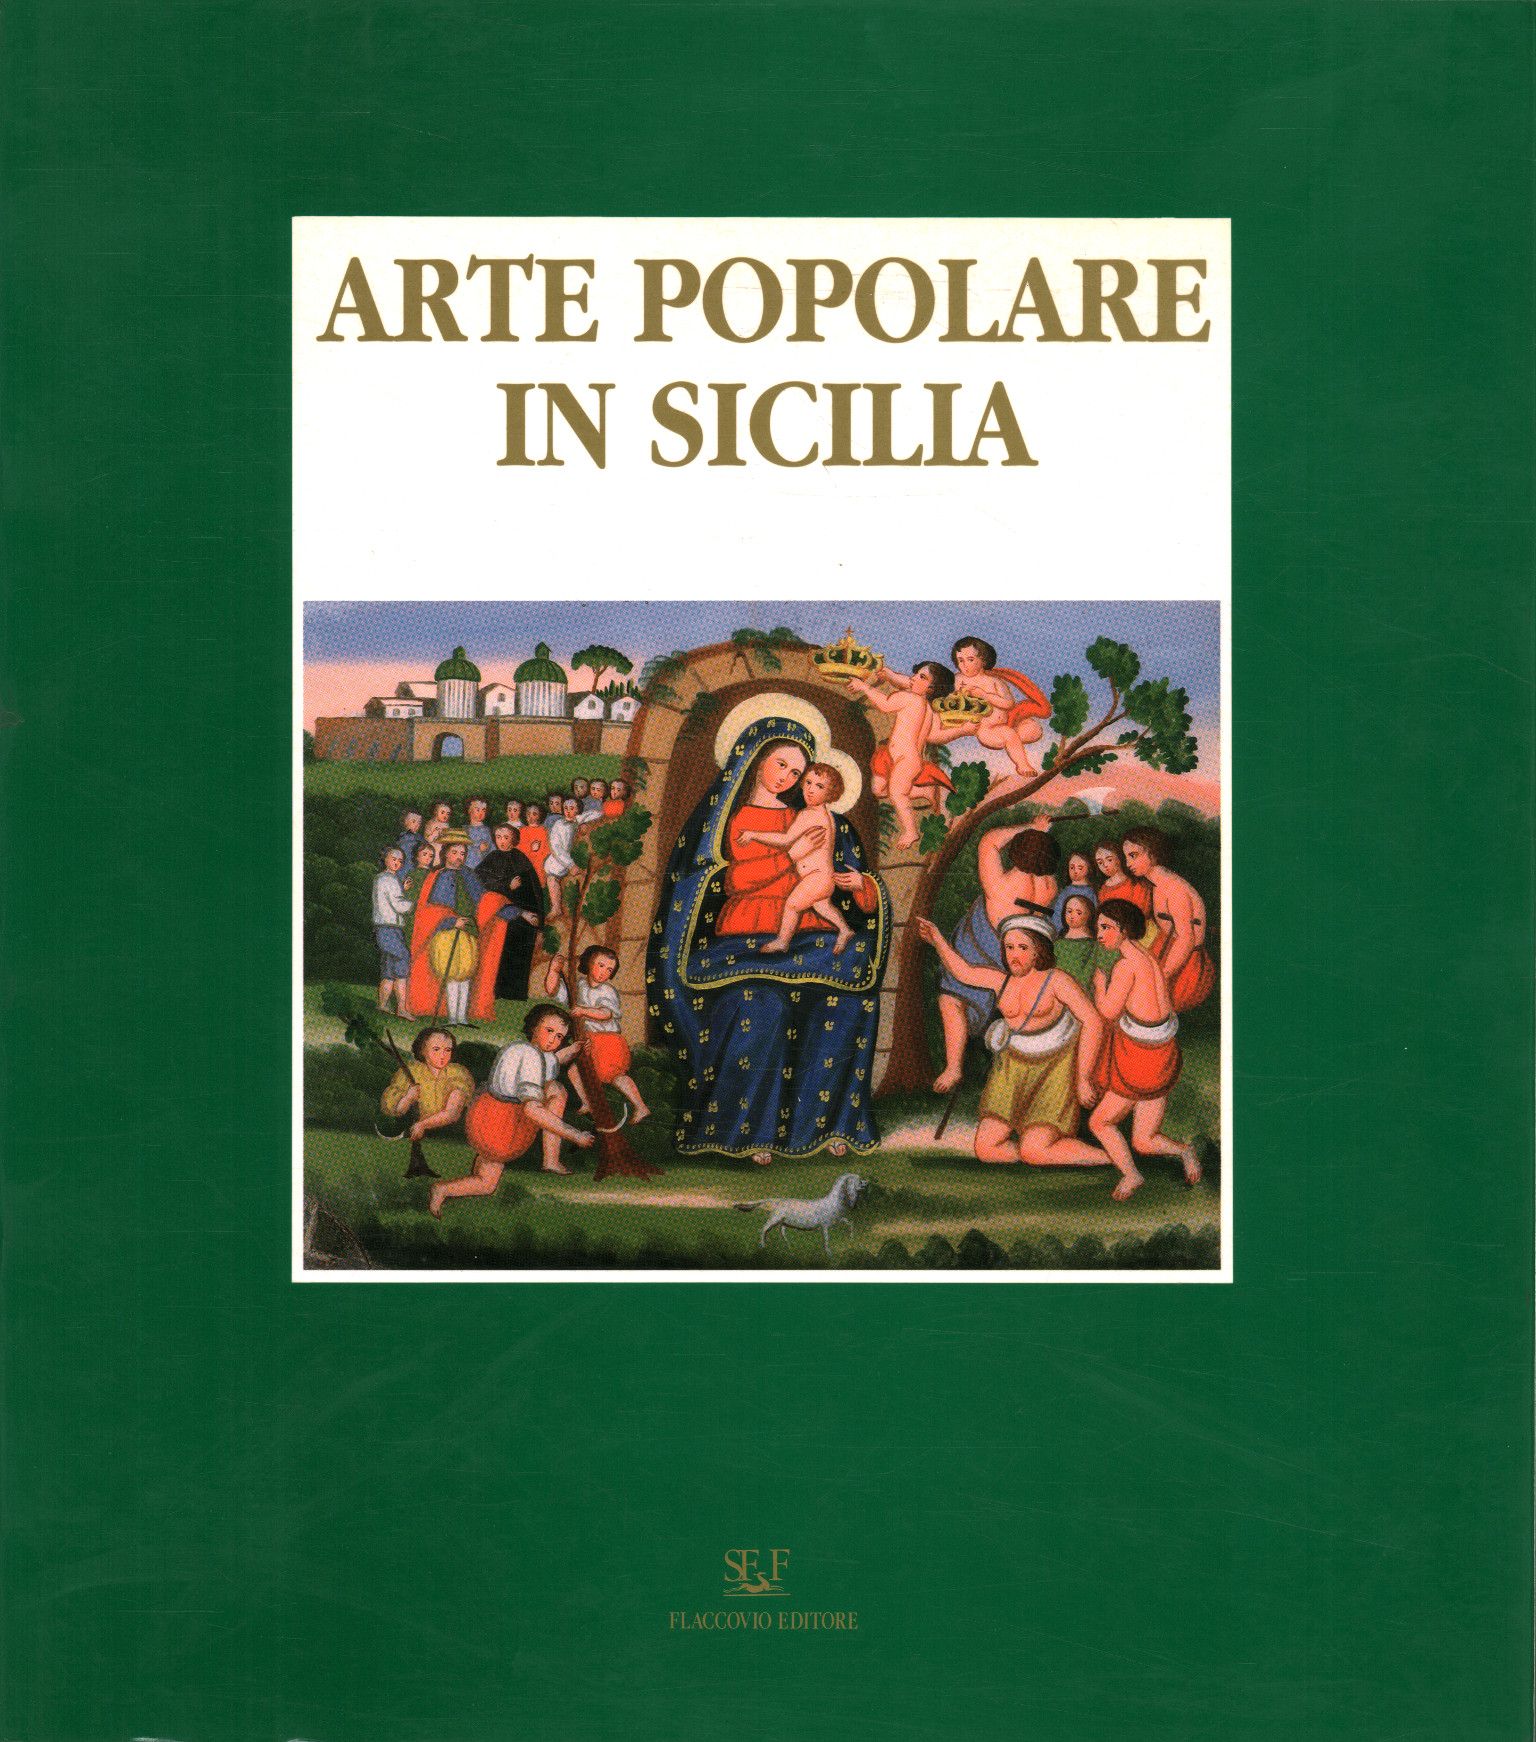 Arte popular en Sicilia